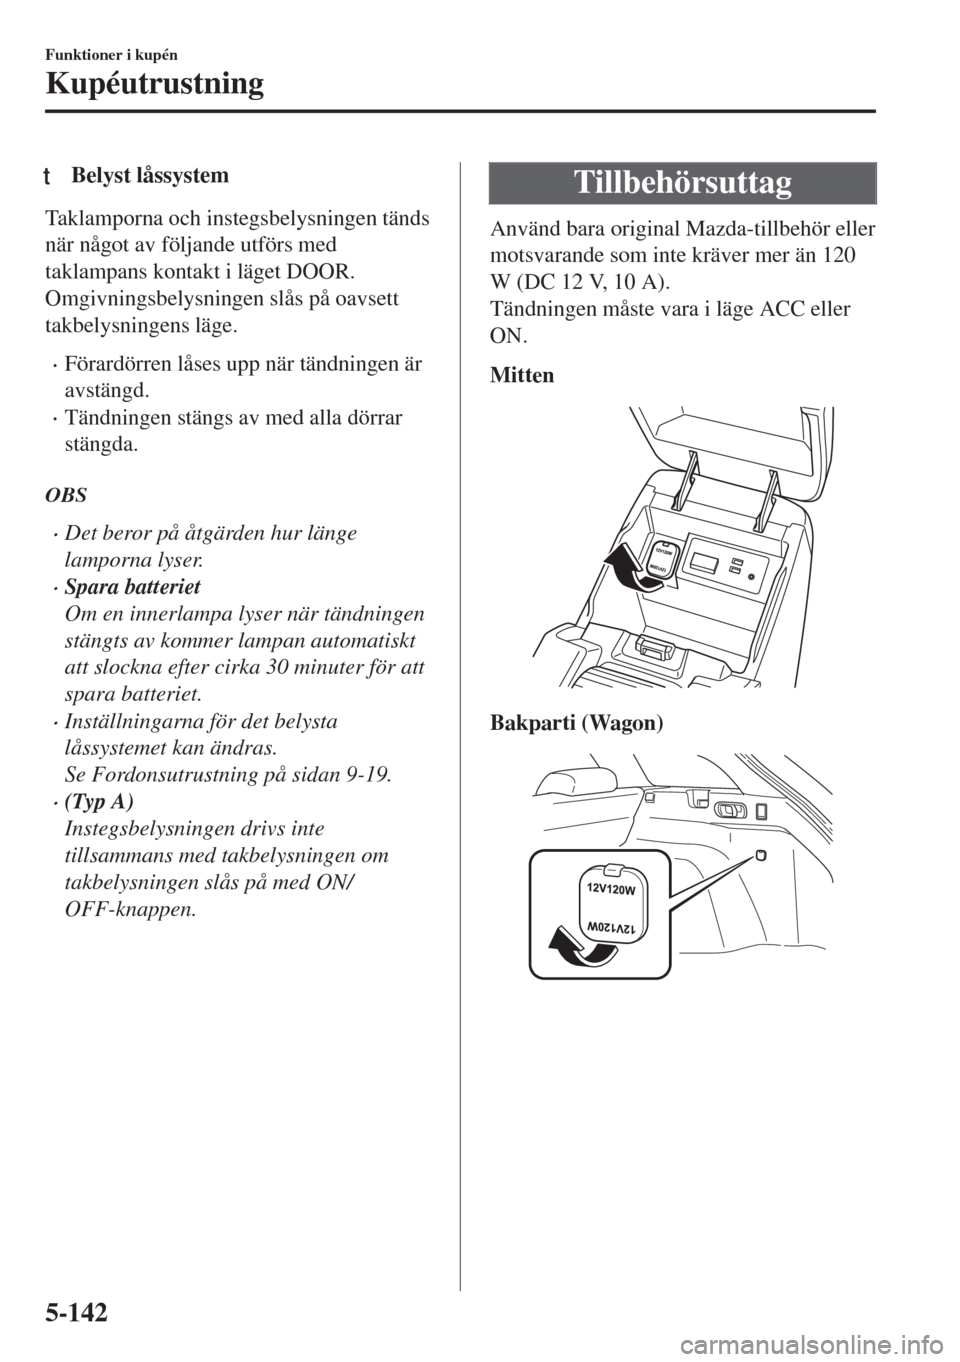 MAZDA MODEL 6 2018  Ägarmanual (in Swedish) tBelyst låssystem
Taklamporna och instegsbelysningen tänds
när något av följande utförs med
taklampans kontakt i läget DOOR.
Omgivningsbelysningen slås på oavsett
takbelysningens läge.
•F�